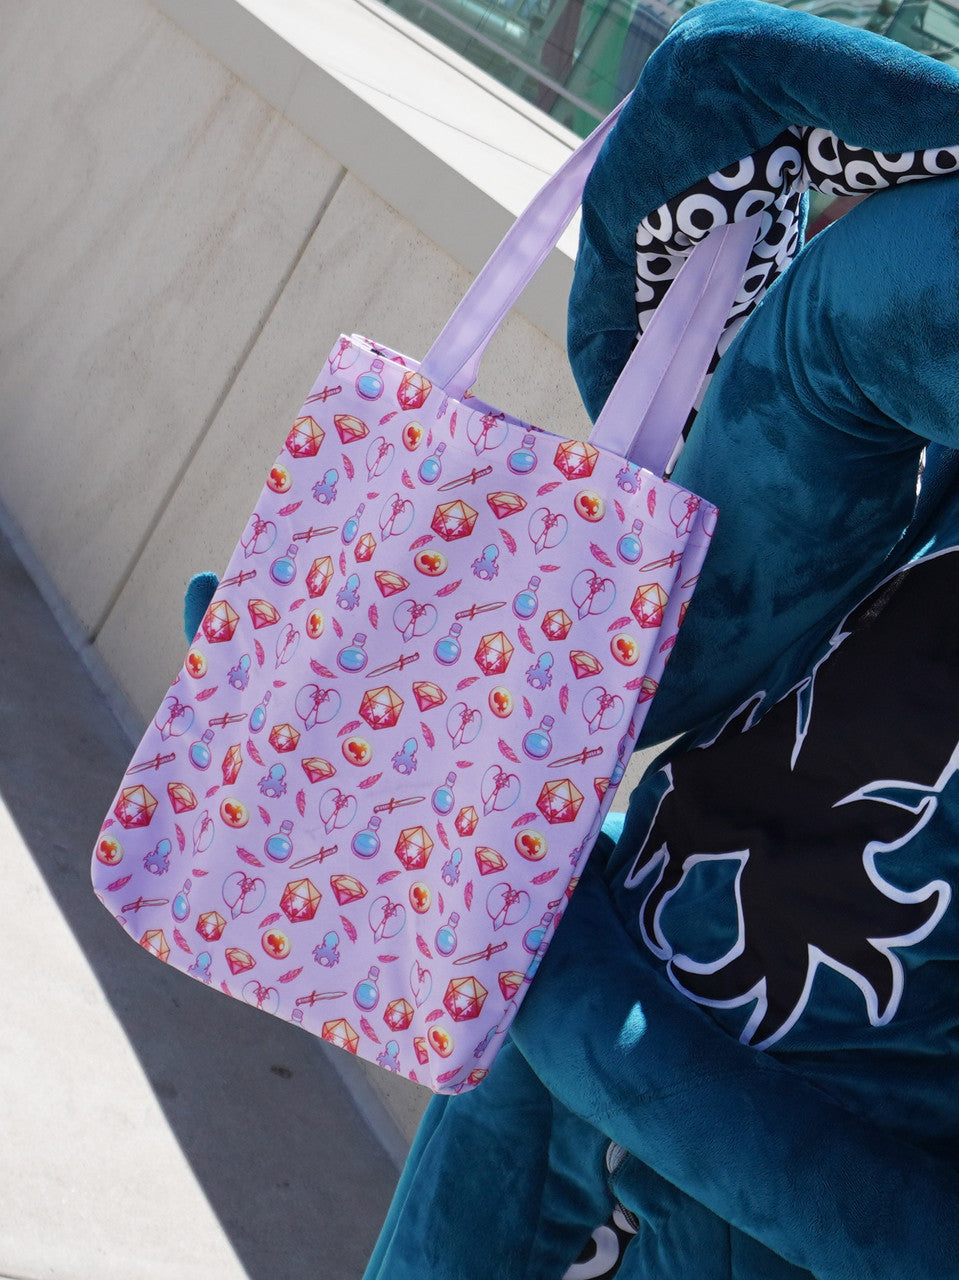 Kraken's Halloween Trick or Treat bag